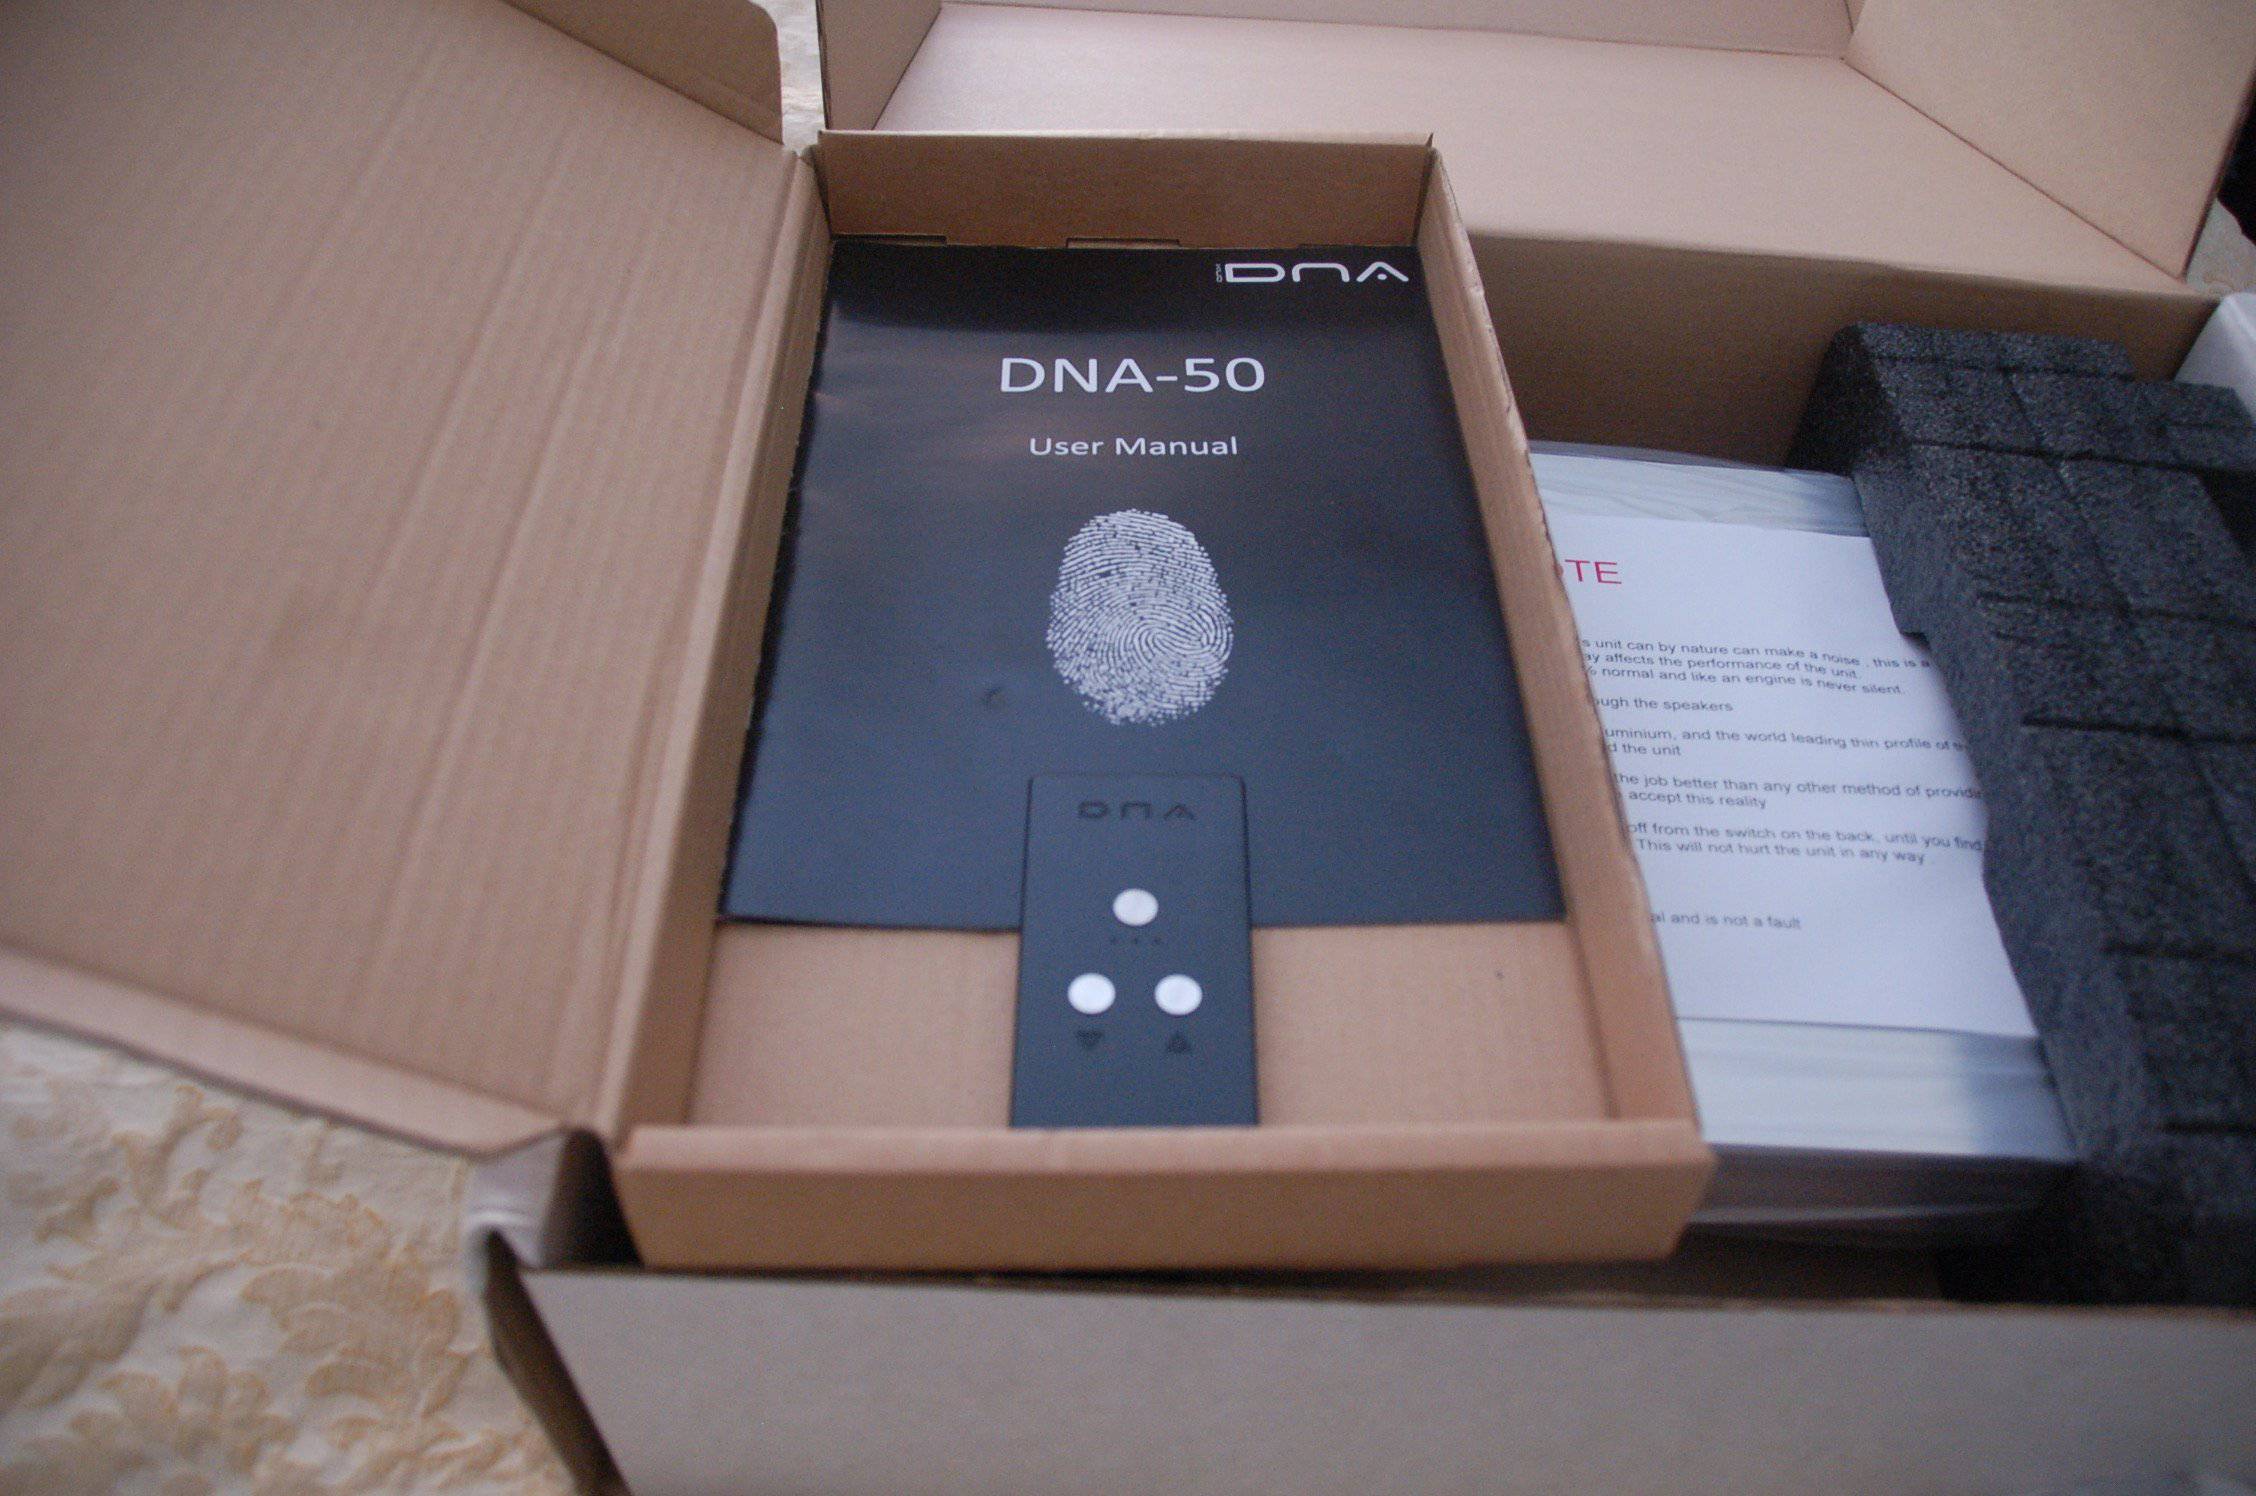 Onix DNA-50